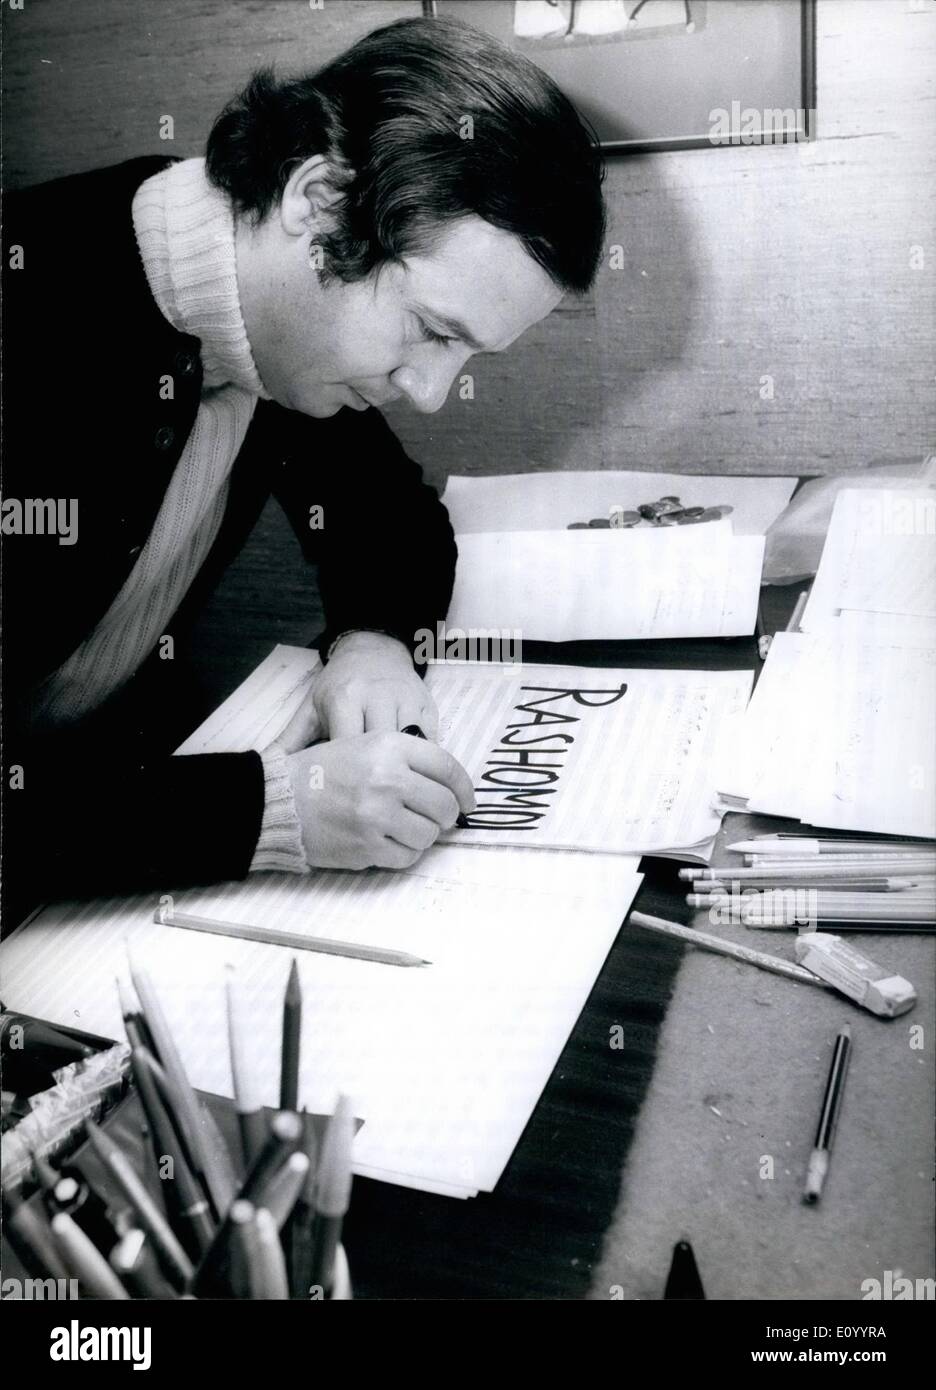 Le 12 décembre 1971 - un opéra écrit spécialement pour les Jeux Olympiques 1972 : Joachim Ludqig, un compositeur de Munich, a été chargé d'écrire un opéra qui doit être effectuée lors des Jeux Olympiques de Munich en 1972. Le 38-year-old musicien travaille à l'extérieur afin de respecter son échéance. (Notre photo) Herr Ludwig compose sa première pièce pour piano à l'âge de 11 ans, fait ses débuts comme pianiste à l'âge de 12 ans, et a étudié le piano, la composition et la direction à Dresde, Berlin, Paris et Salzbourg lorsque l'un de ses professeurs était le conducteur célèbre Herbert von Karajan Banque D'Images